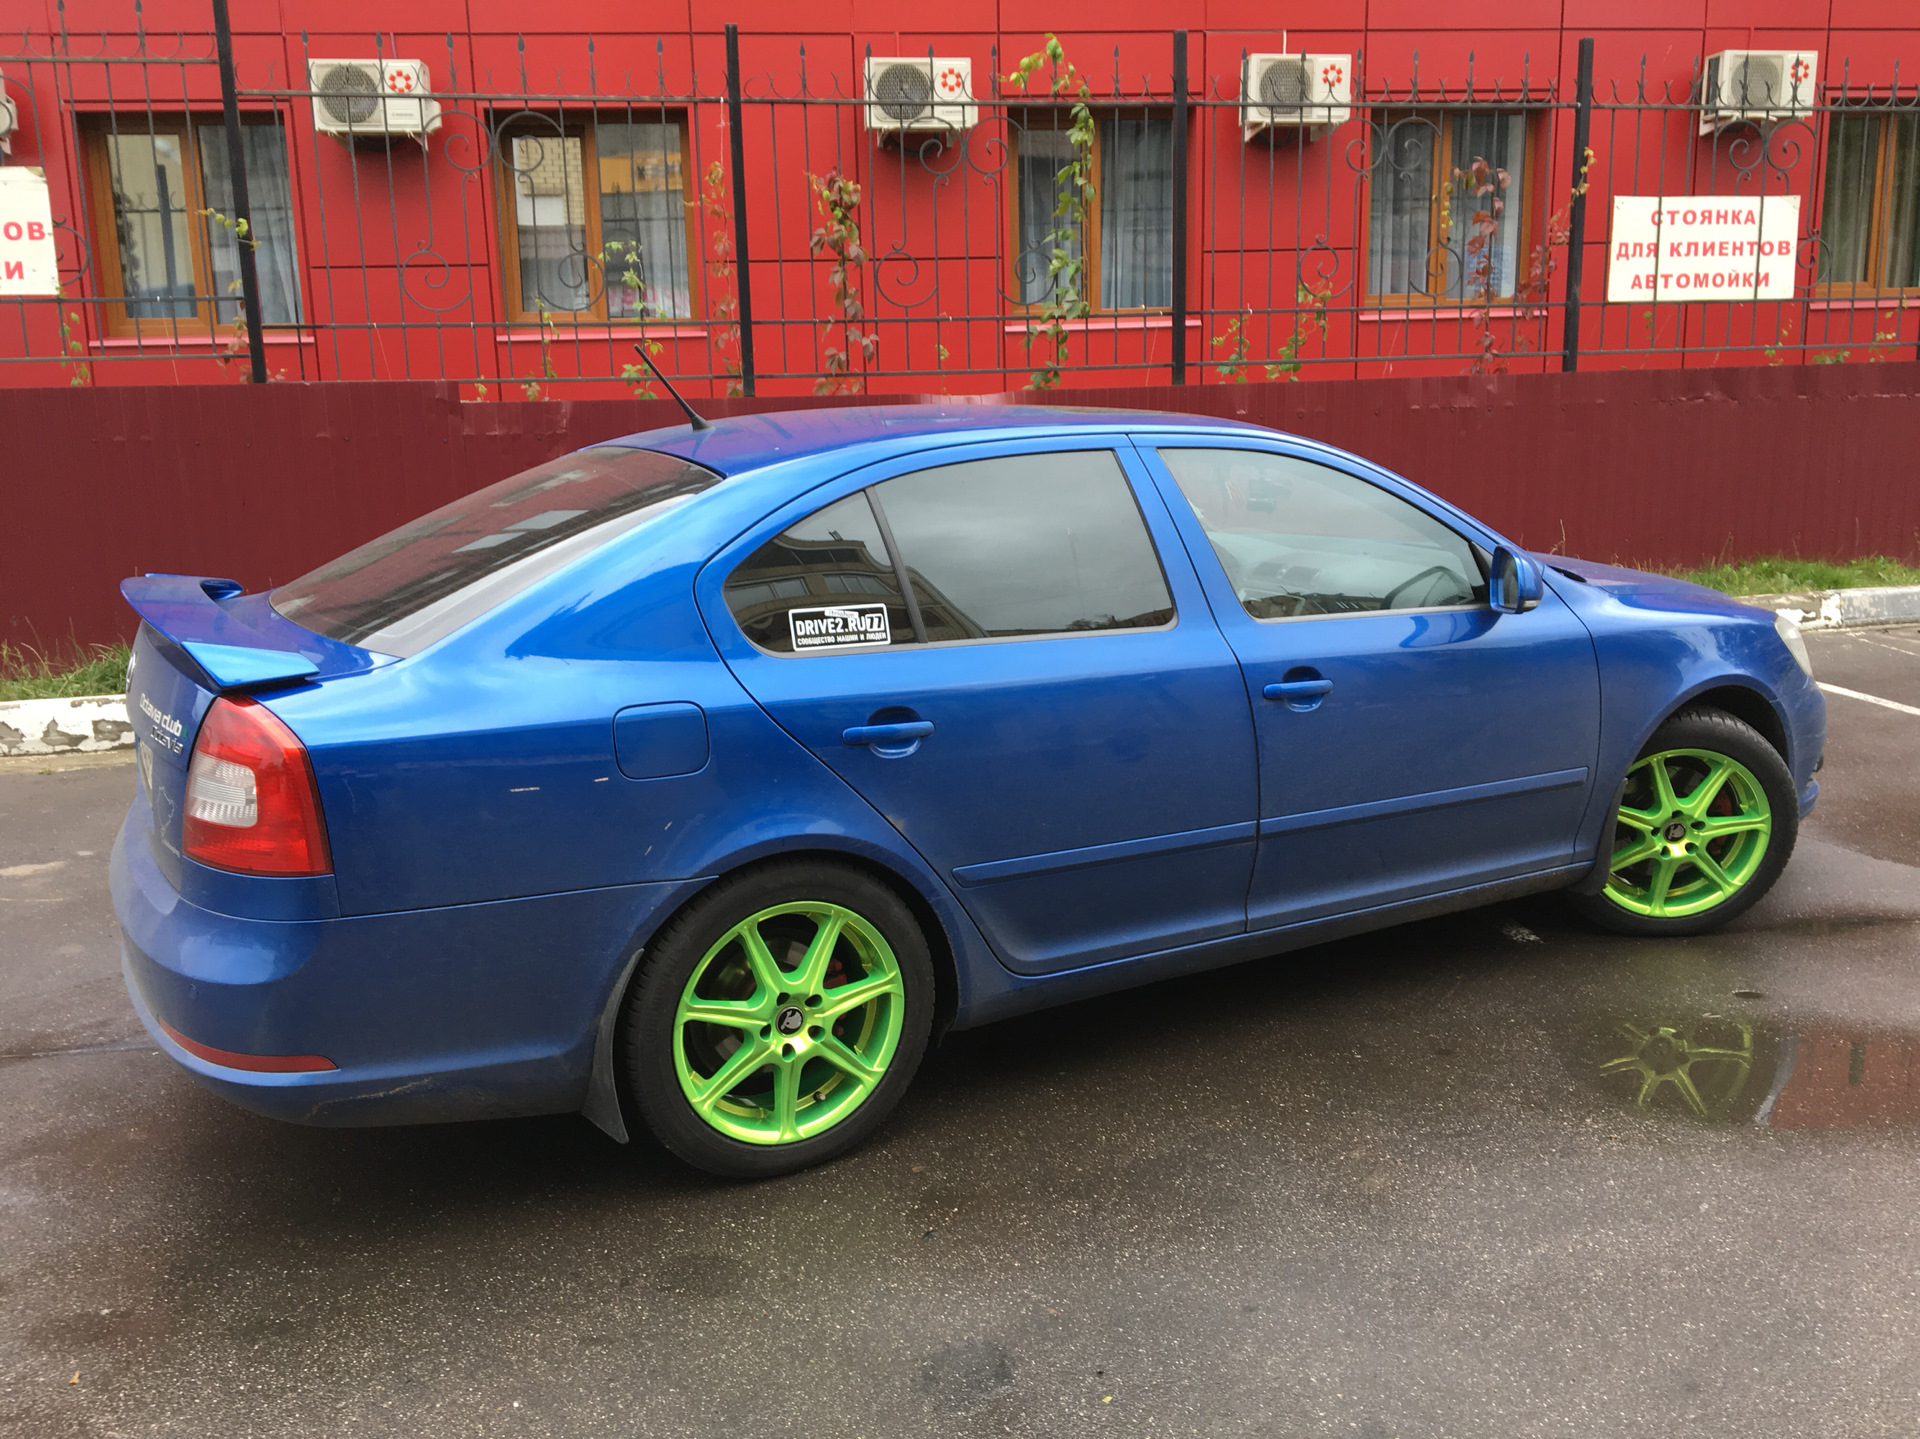 Синяя машина с зелеными дисками